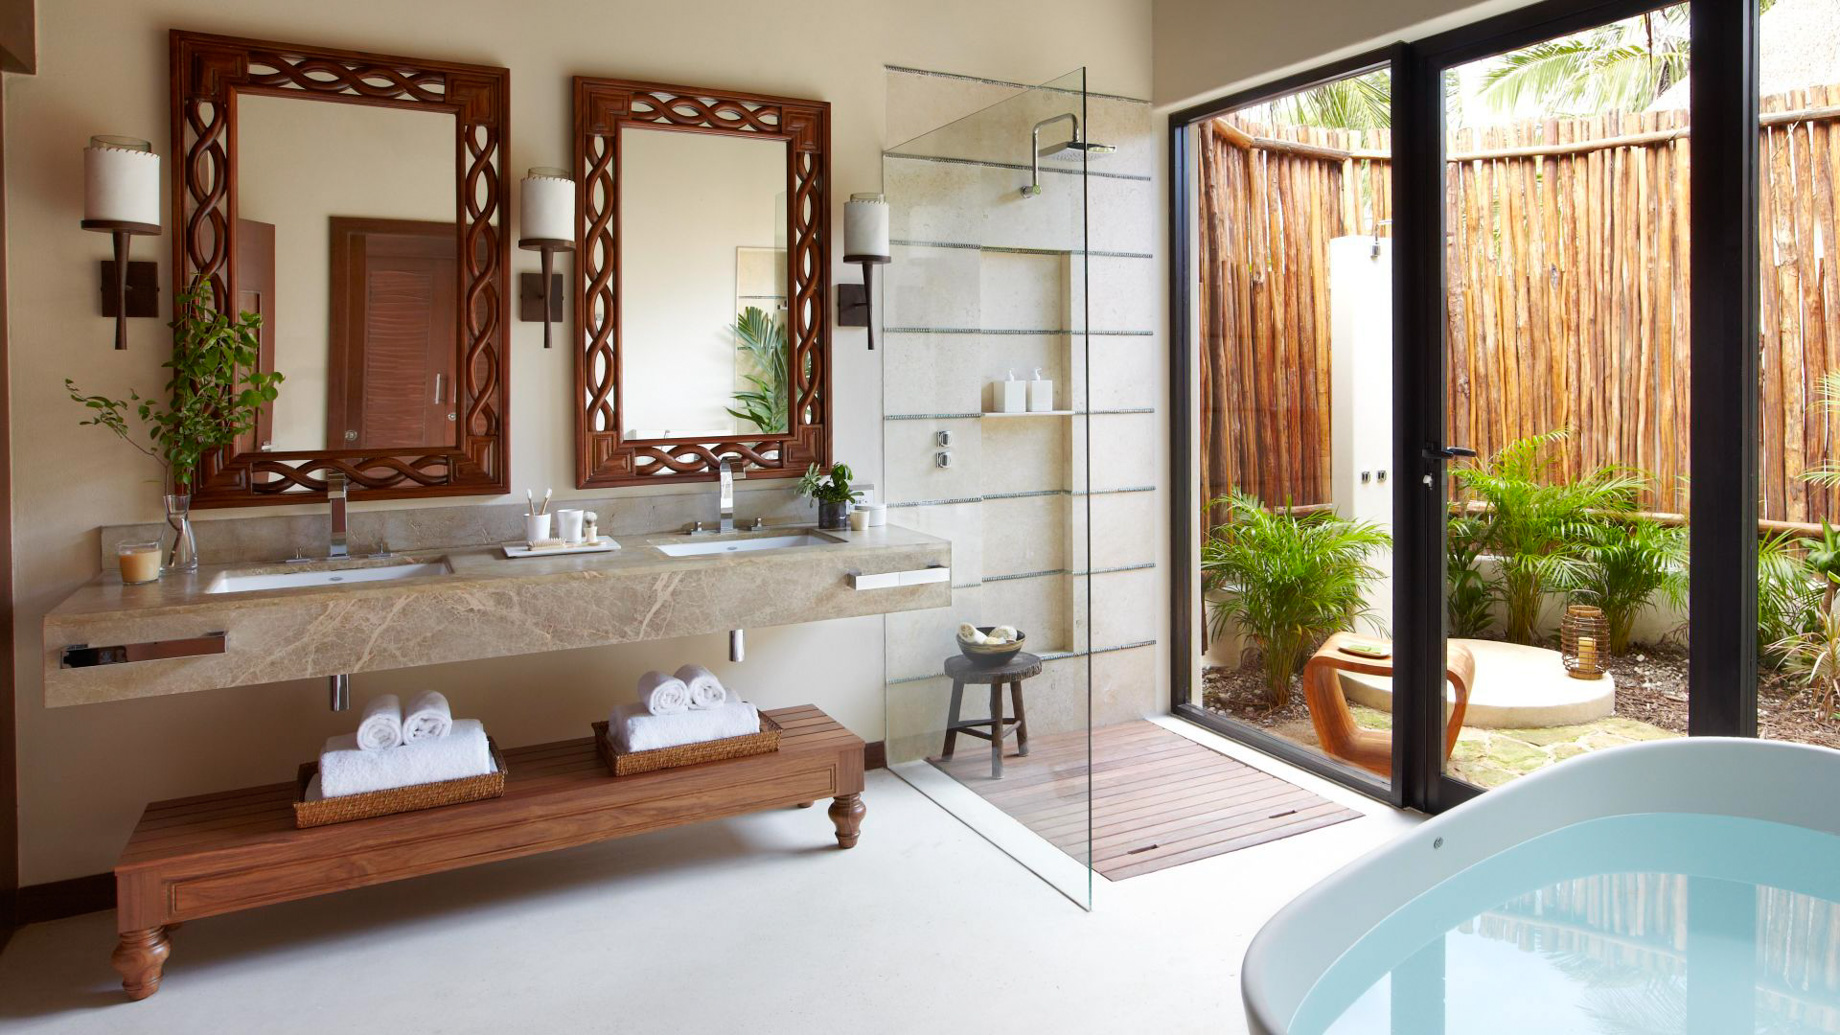 Viceroy Riviera Maya Resort - Playa del Carmen, Mexico - Premium Villa Bathroom